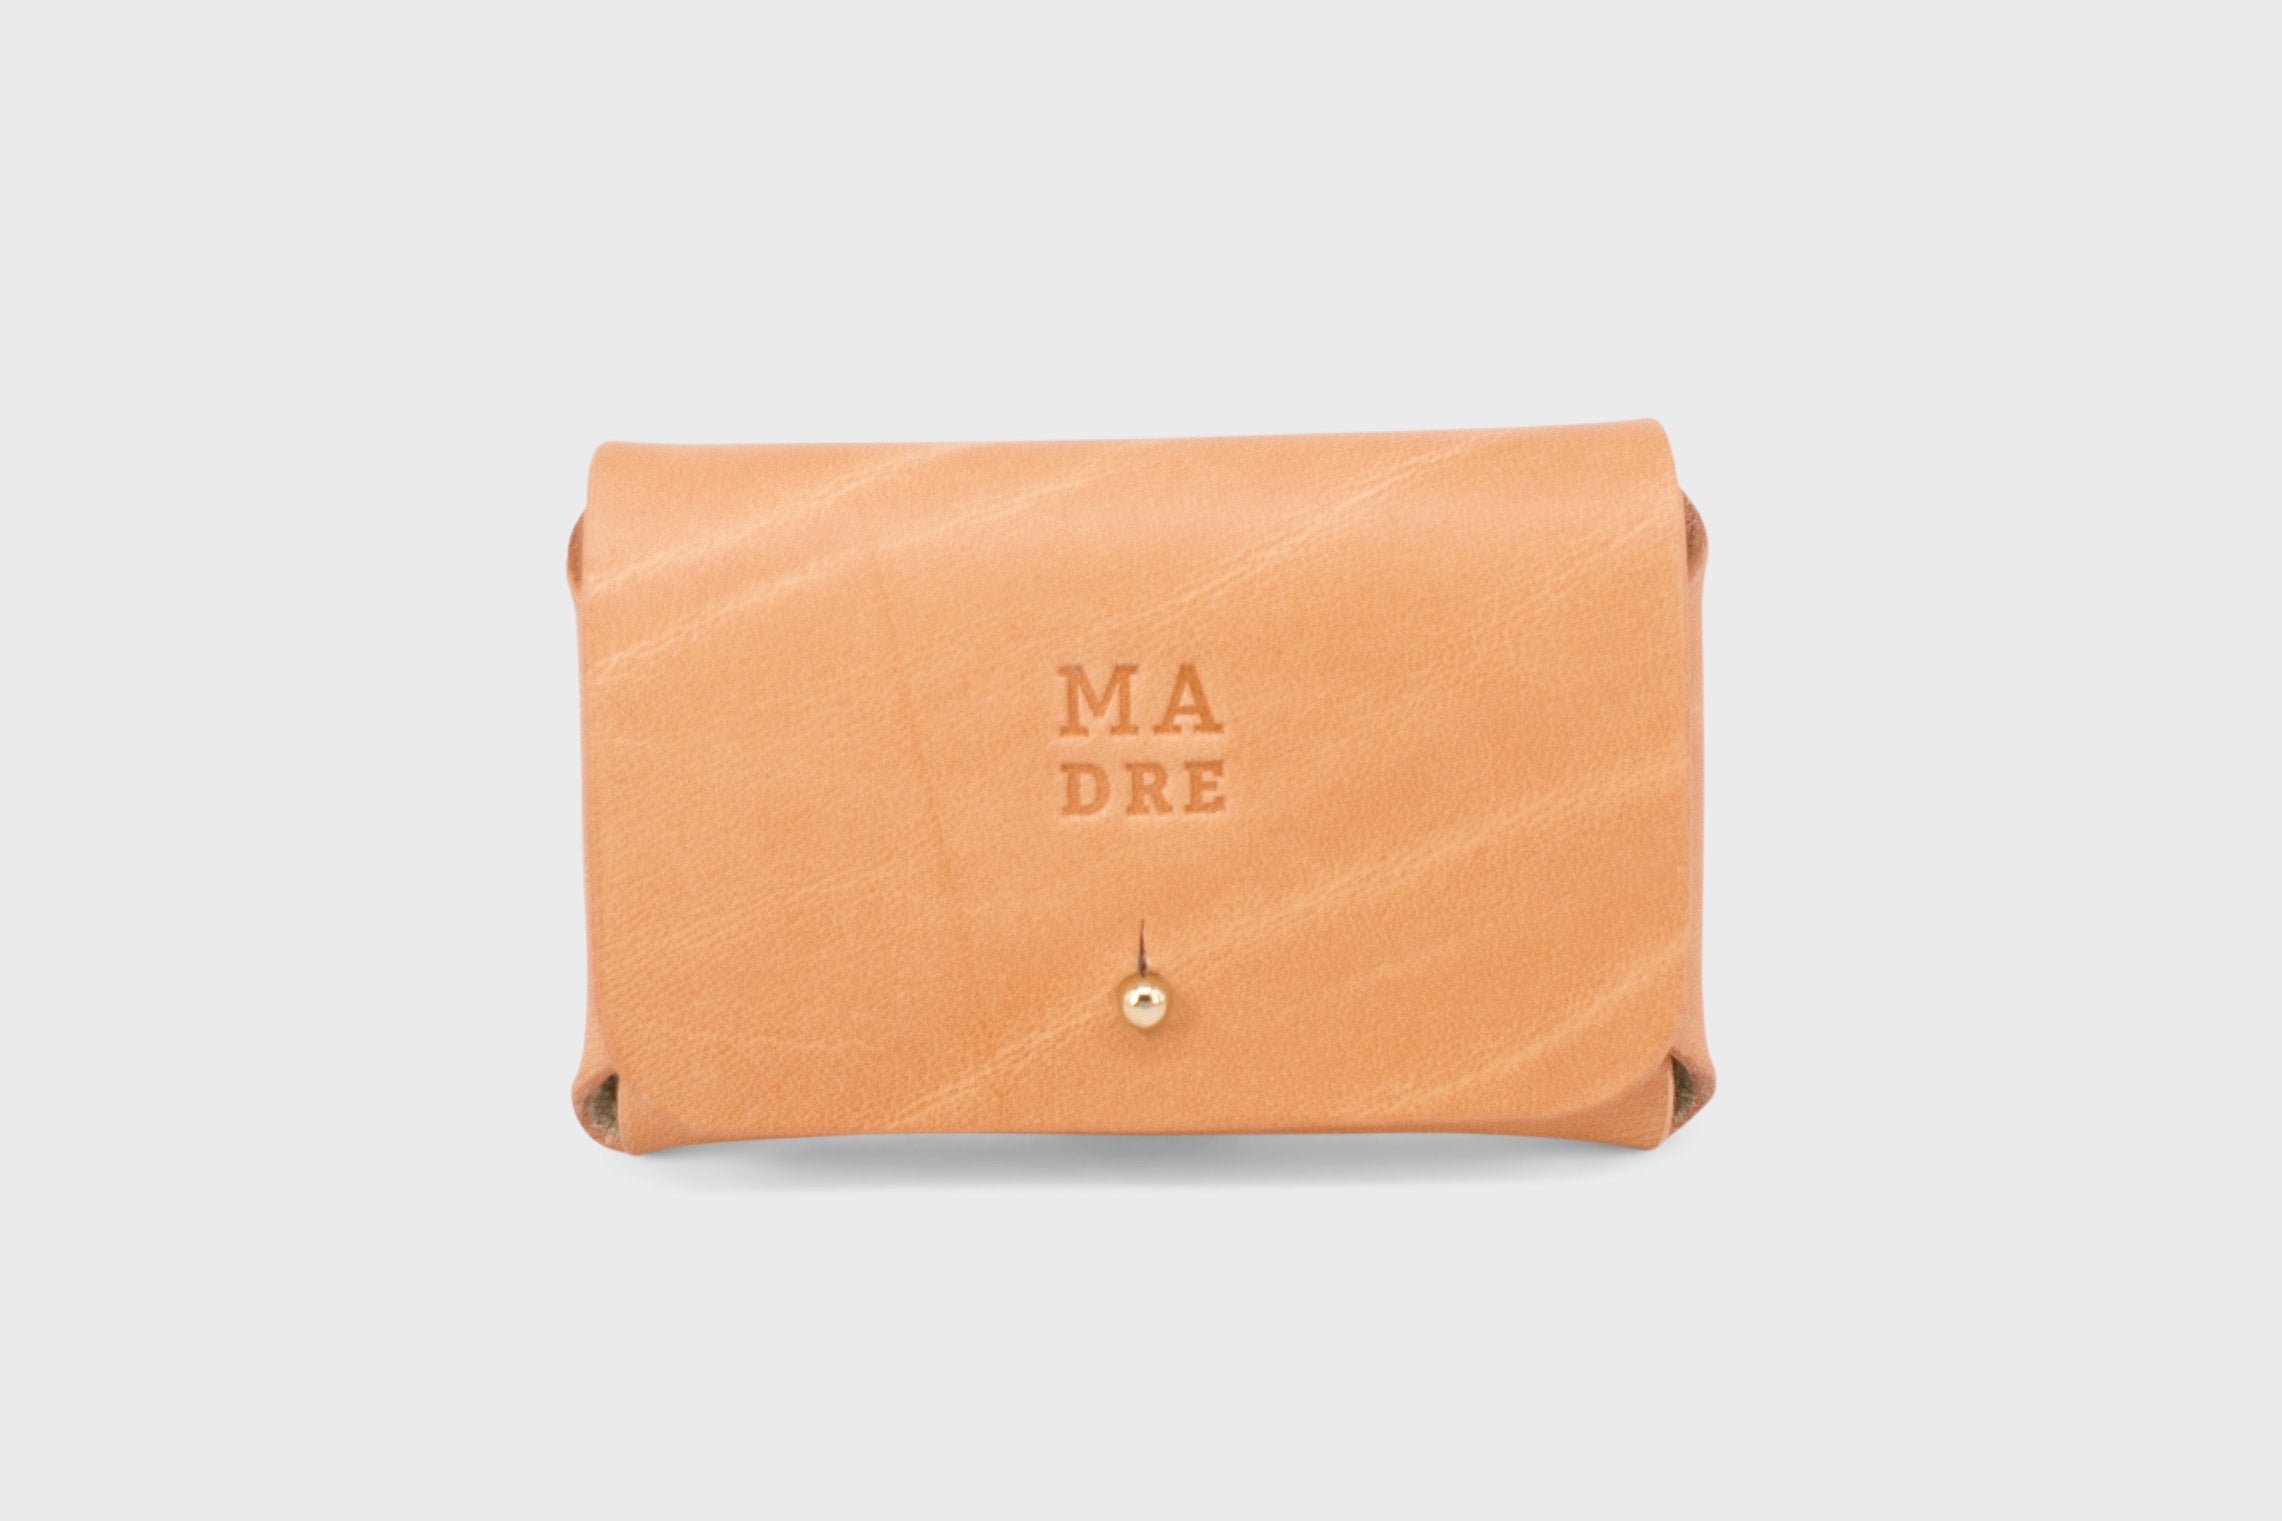 Leather wallet cardholder horizontal design brown color minimalist design atelier madre manuel dreesmann barcelona